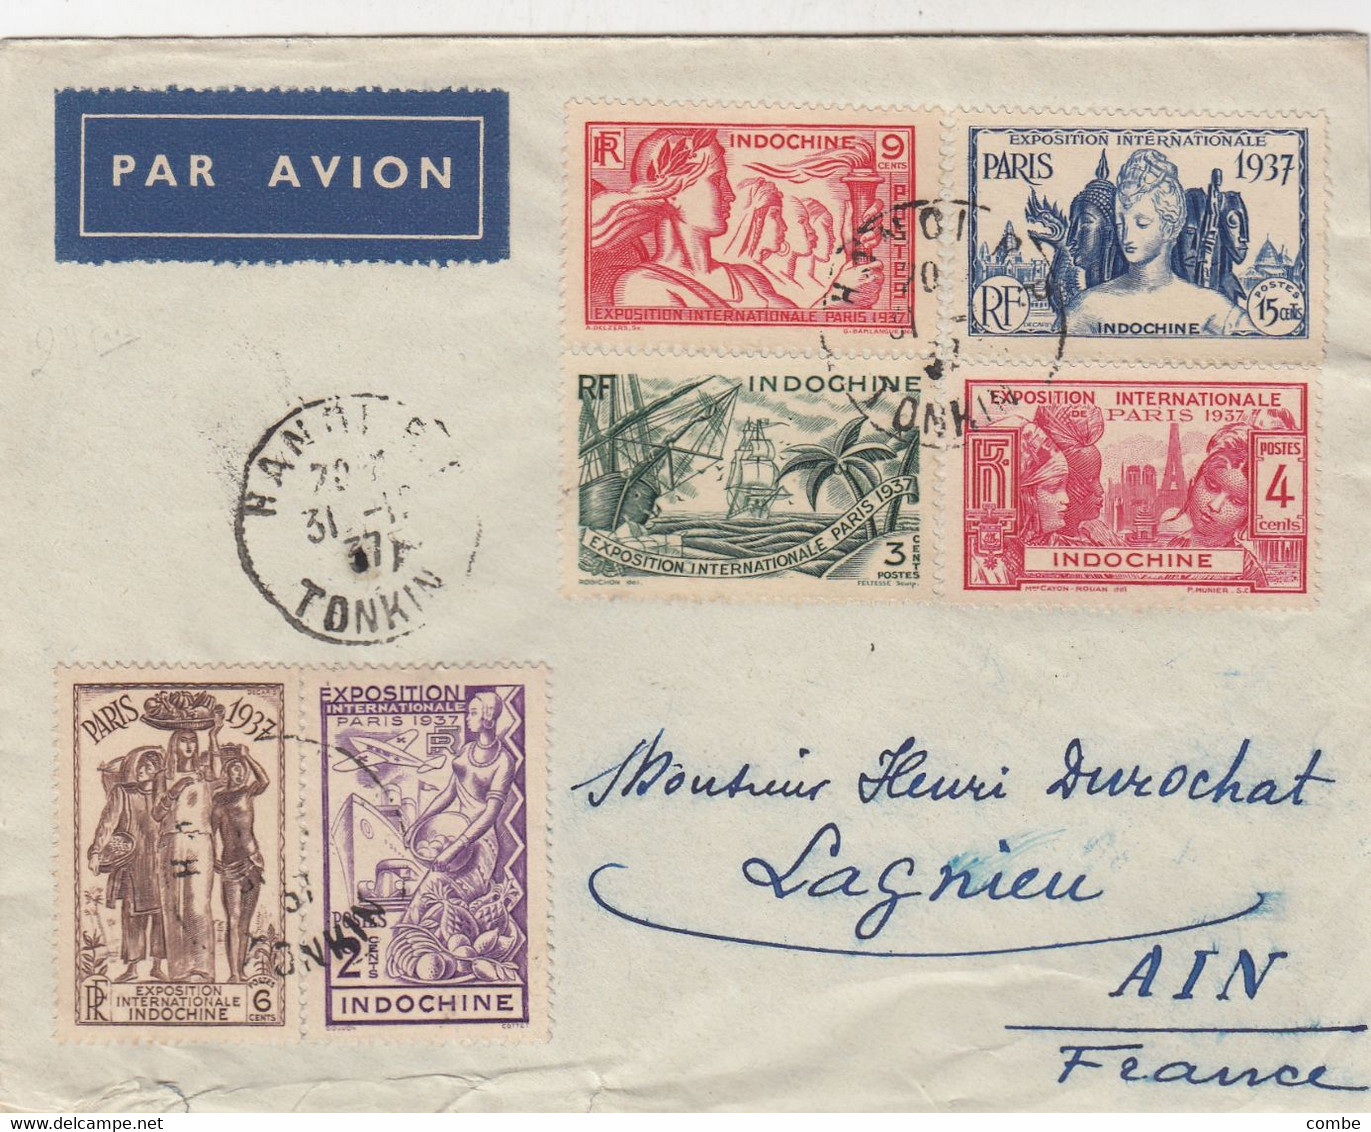 LETTRE. INDOCHINE. 31 12 37. SERIE EXPOSITION INTERNATIONALE DE PARIS 1937. PAR AVION. HANOI POUR LA FRANCE - Covers & Documents